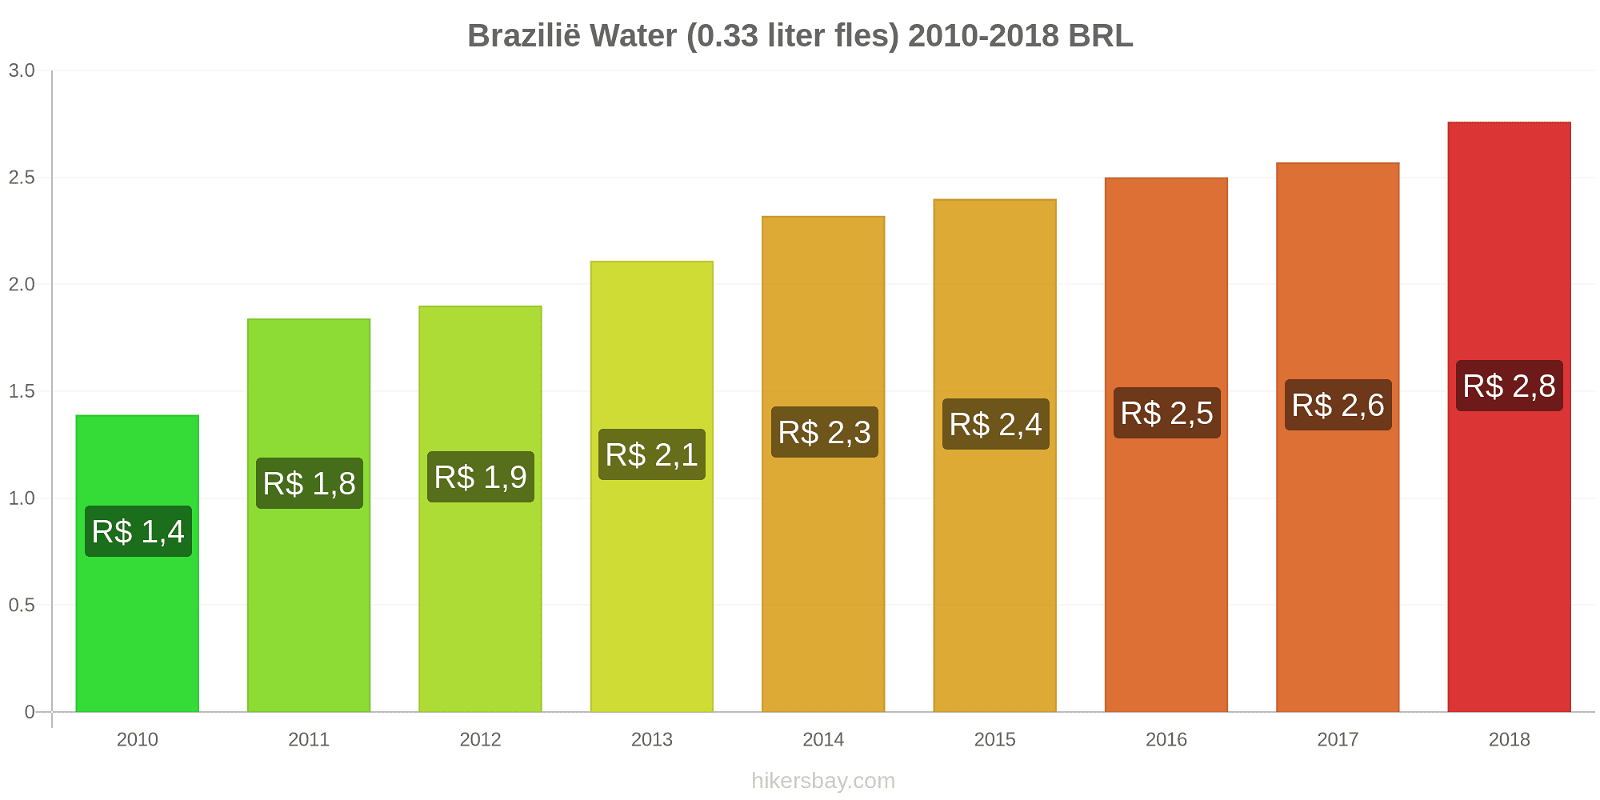 Brazilië prijswijzigingen Water (0,33 liter fles) hikersbay.com